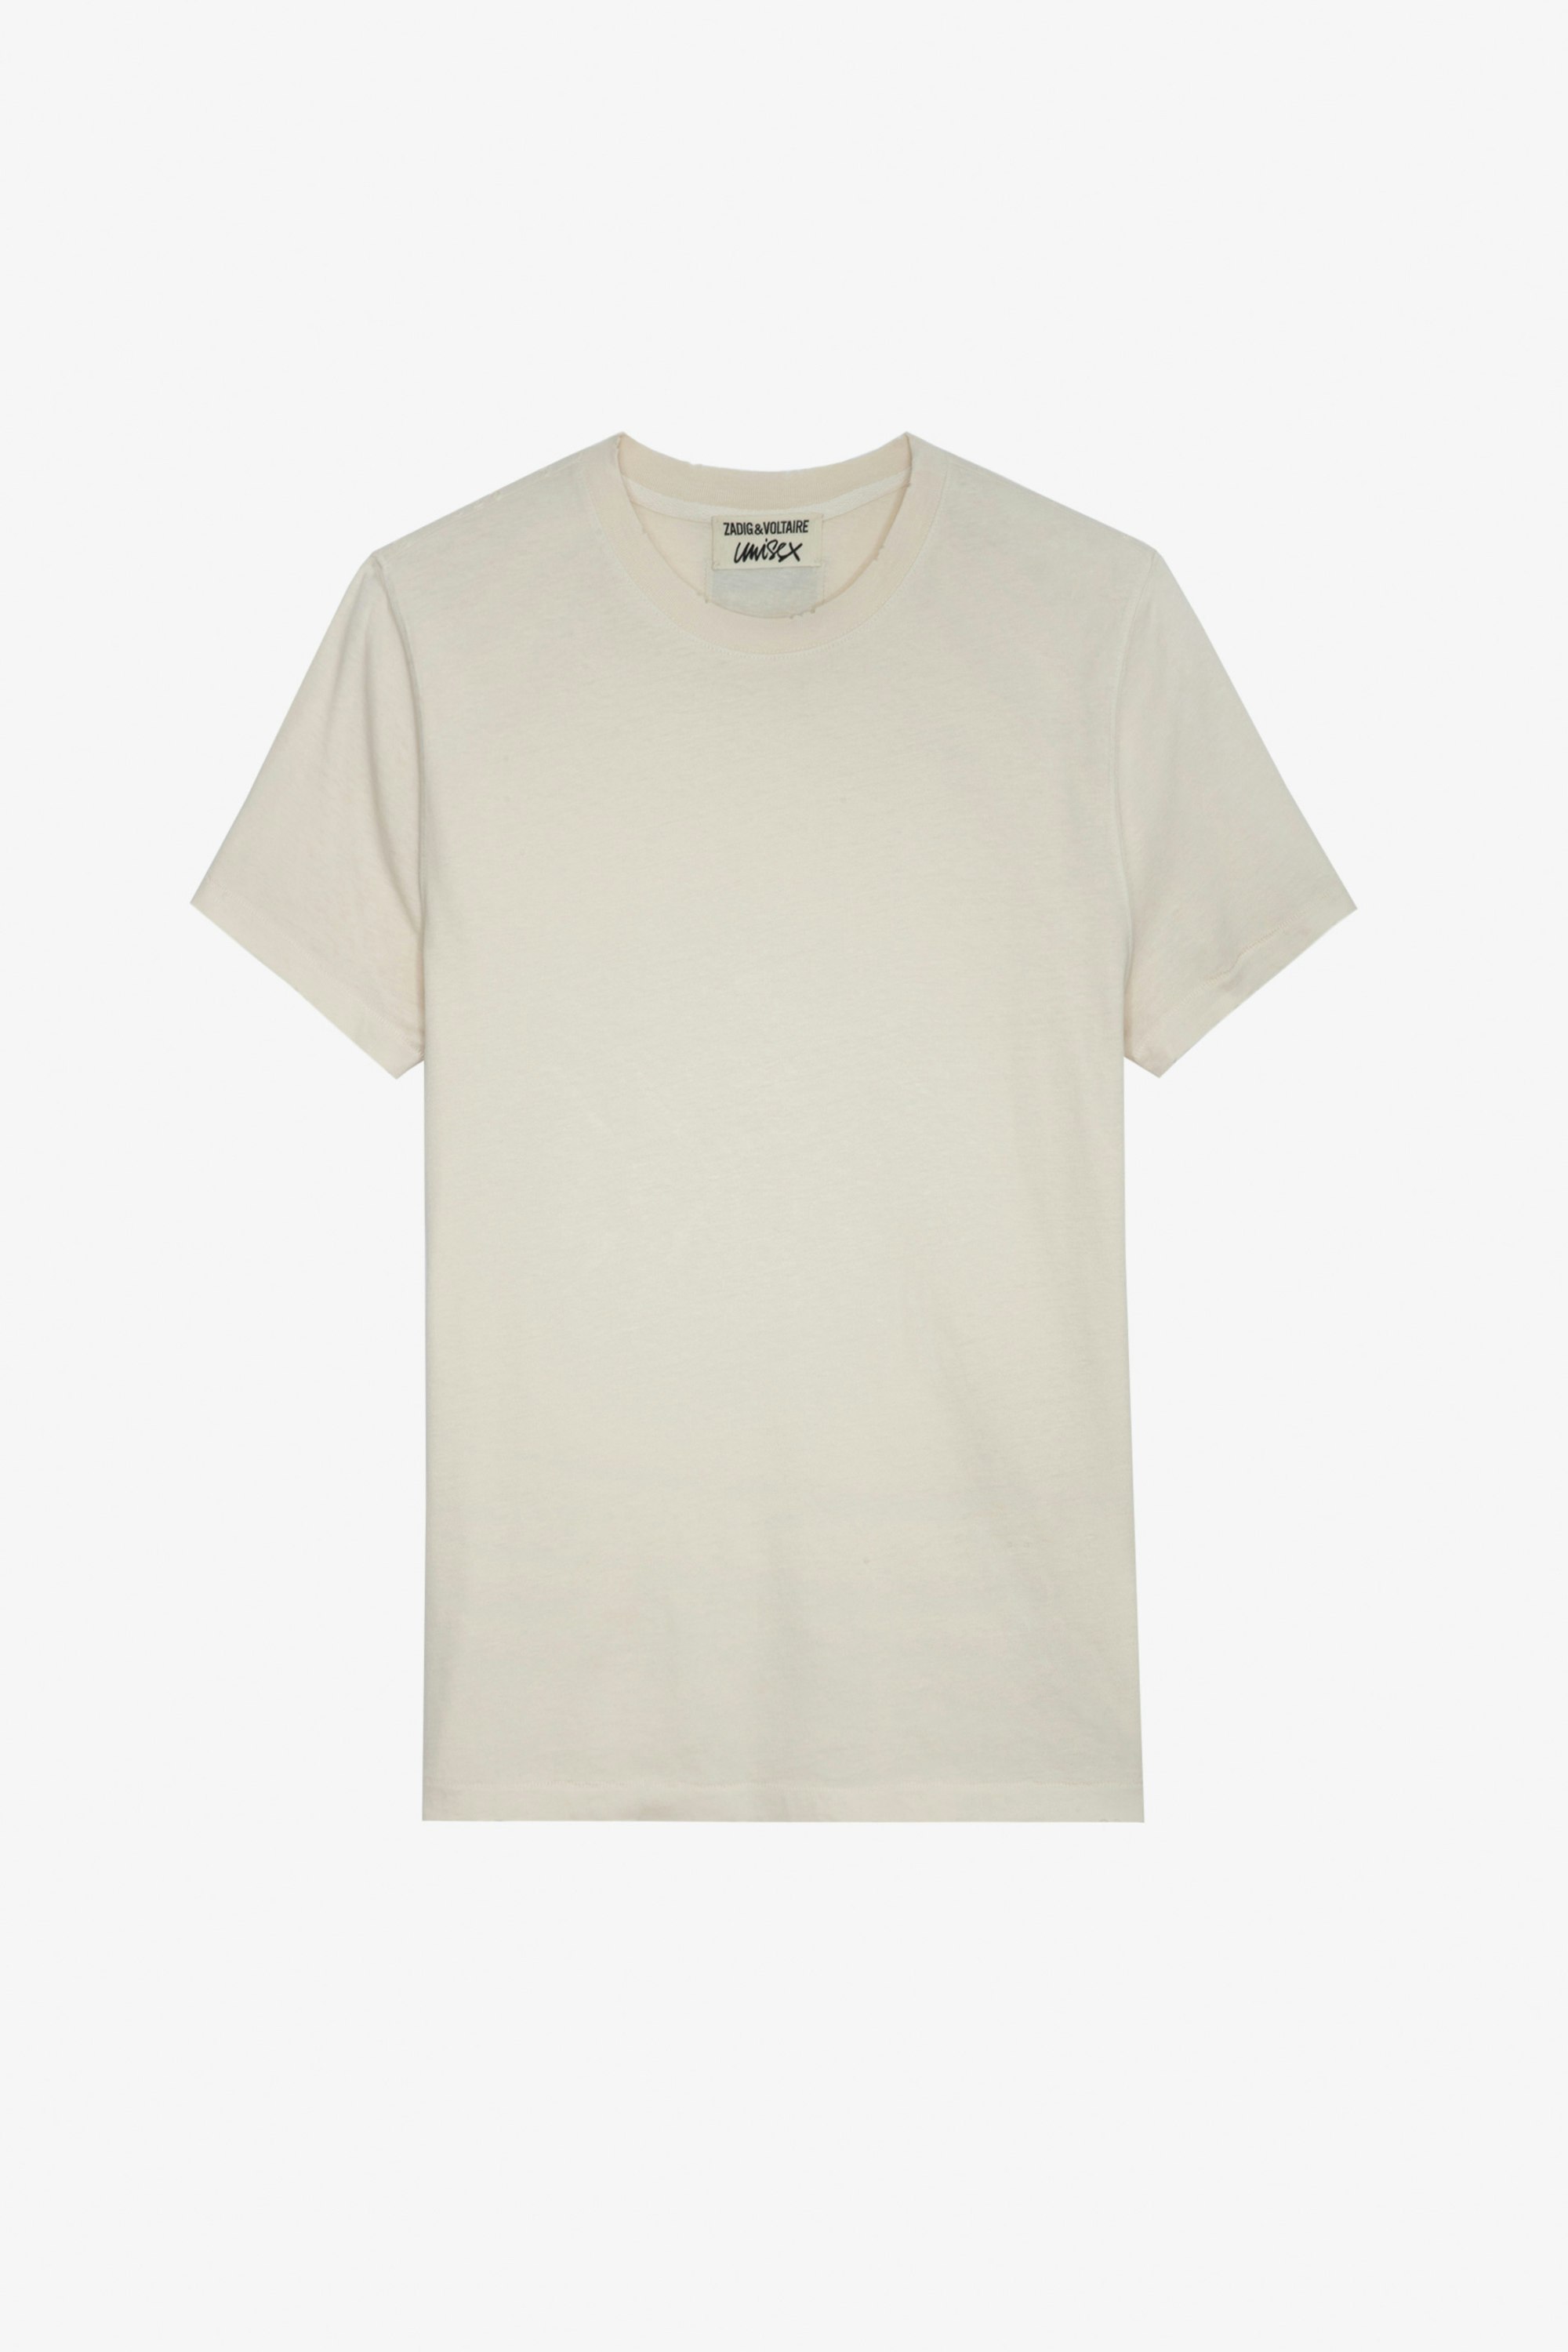 Camiseta Jimmy - Camiseta unisex de algodón en color crudo con insignia de blasón del estudio en la espalda.